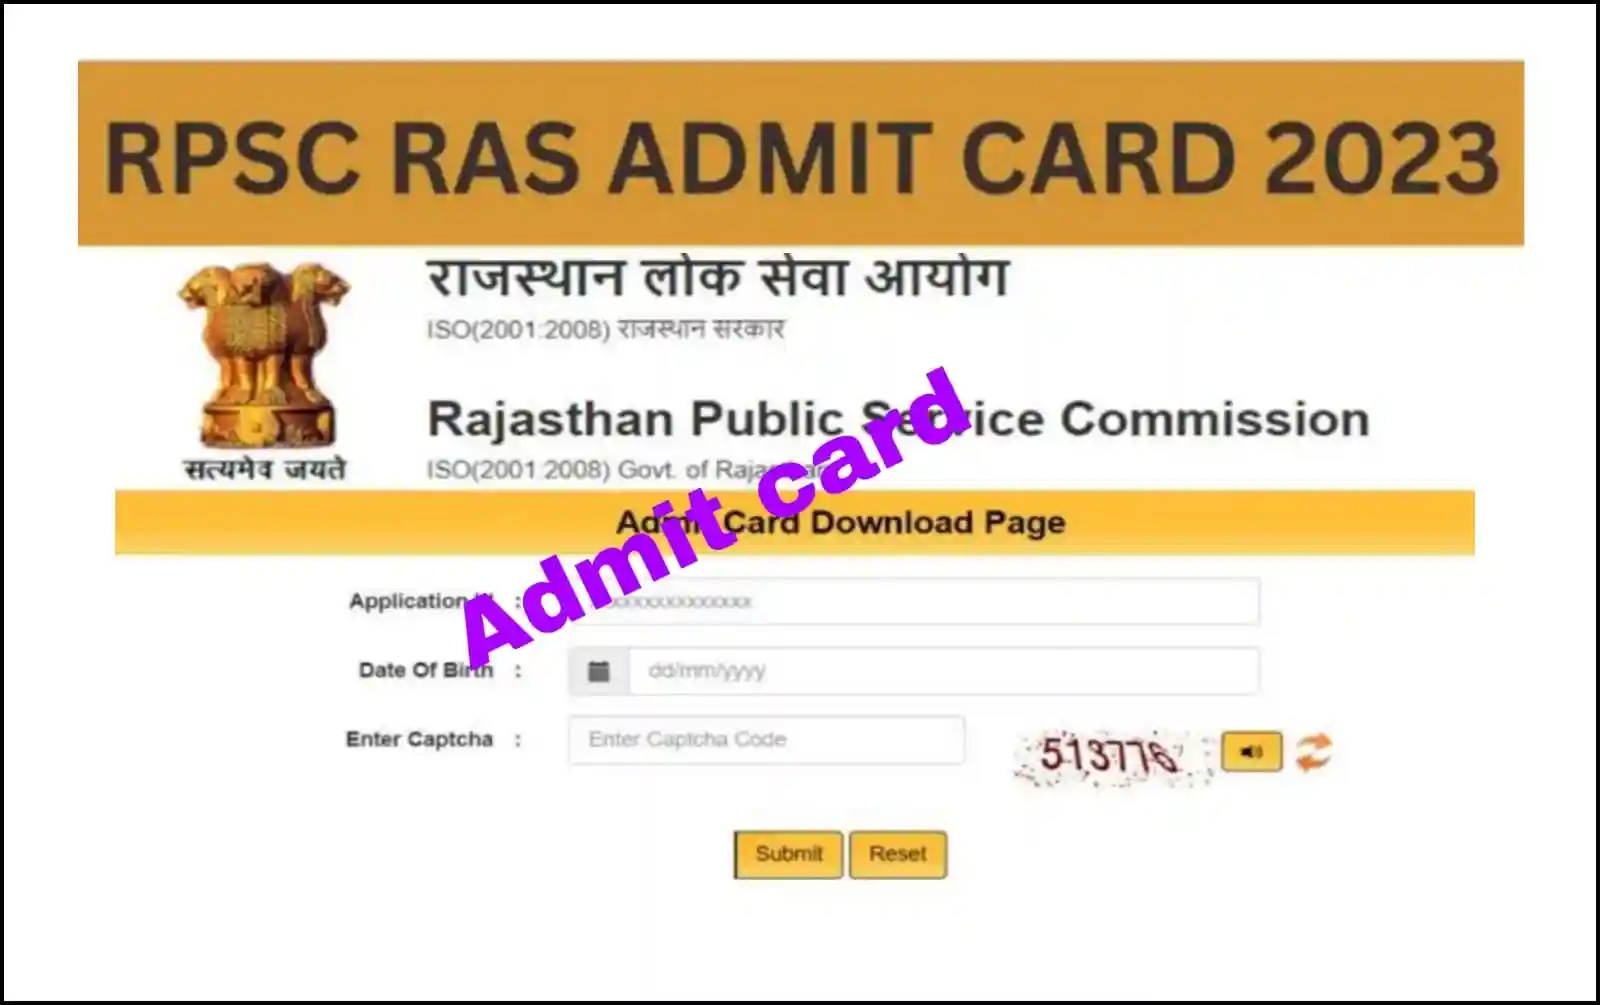 RPSC RAS Admit Card 2023 आरपीएससी आरएएस एडमिट कार्ड 2023 जारी, यहा से करे डाउनलोड